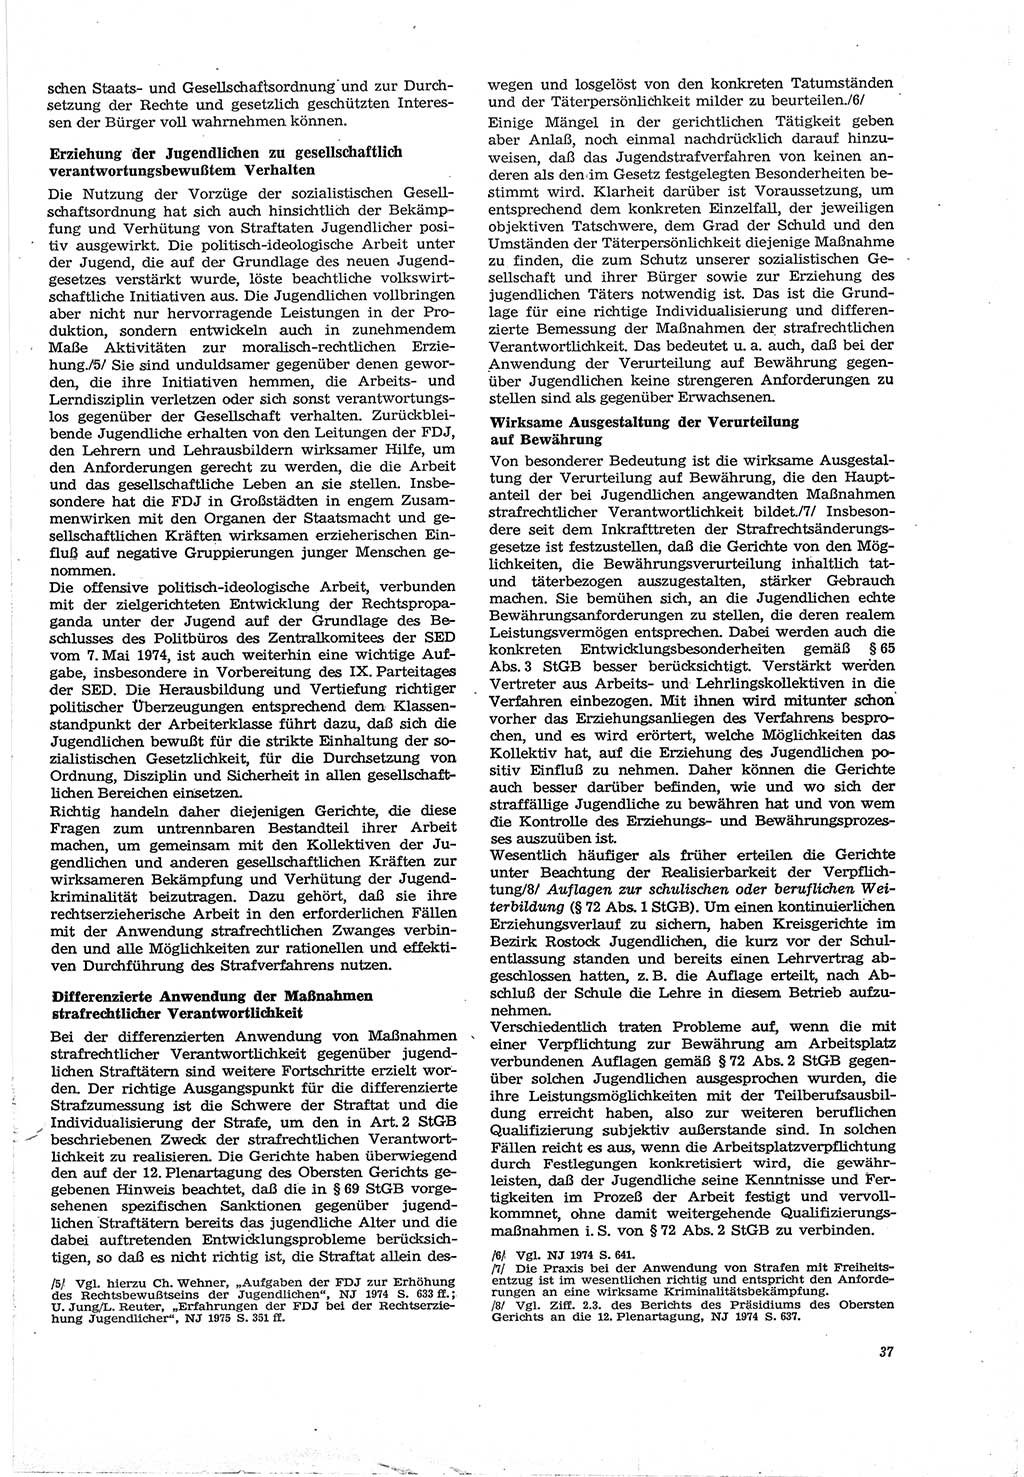 Neue Justiz (NJ), Zeitschrift für Recht und Rechtswissenschaft [Deutsche Demokratische Republik (DDR)], 30. Jahrgang 1976, Seite 37 (NJ DDR 1976, S. 37)